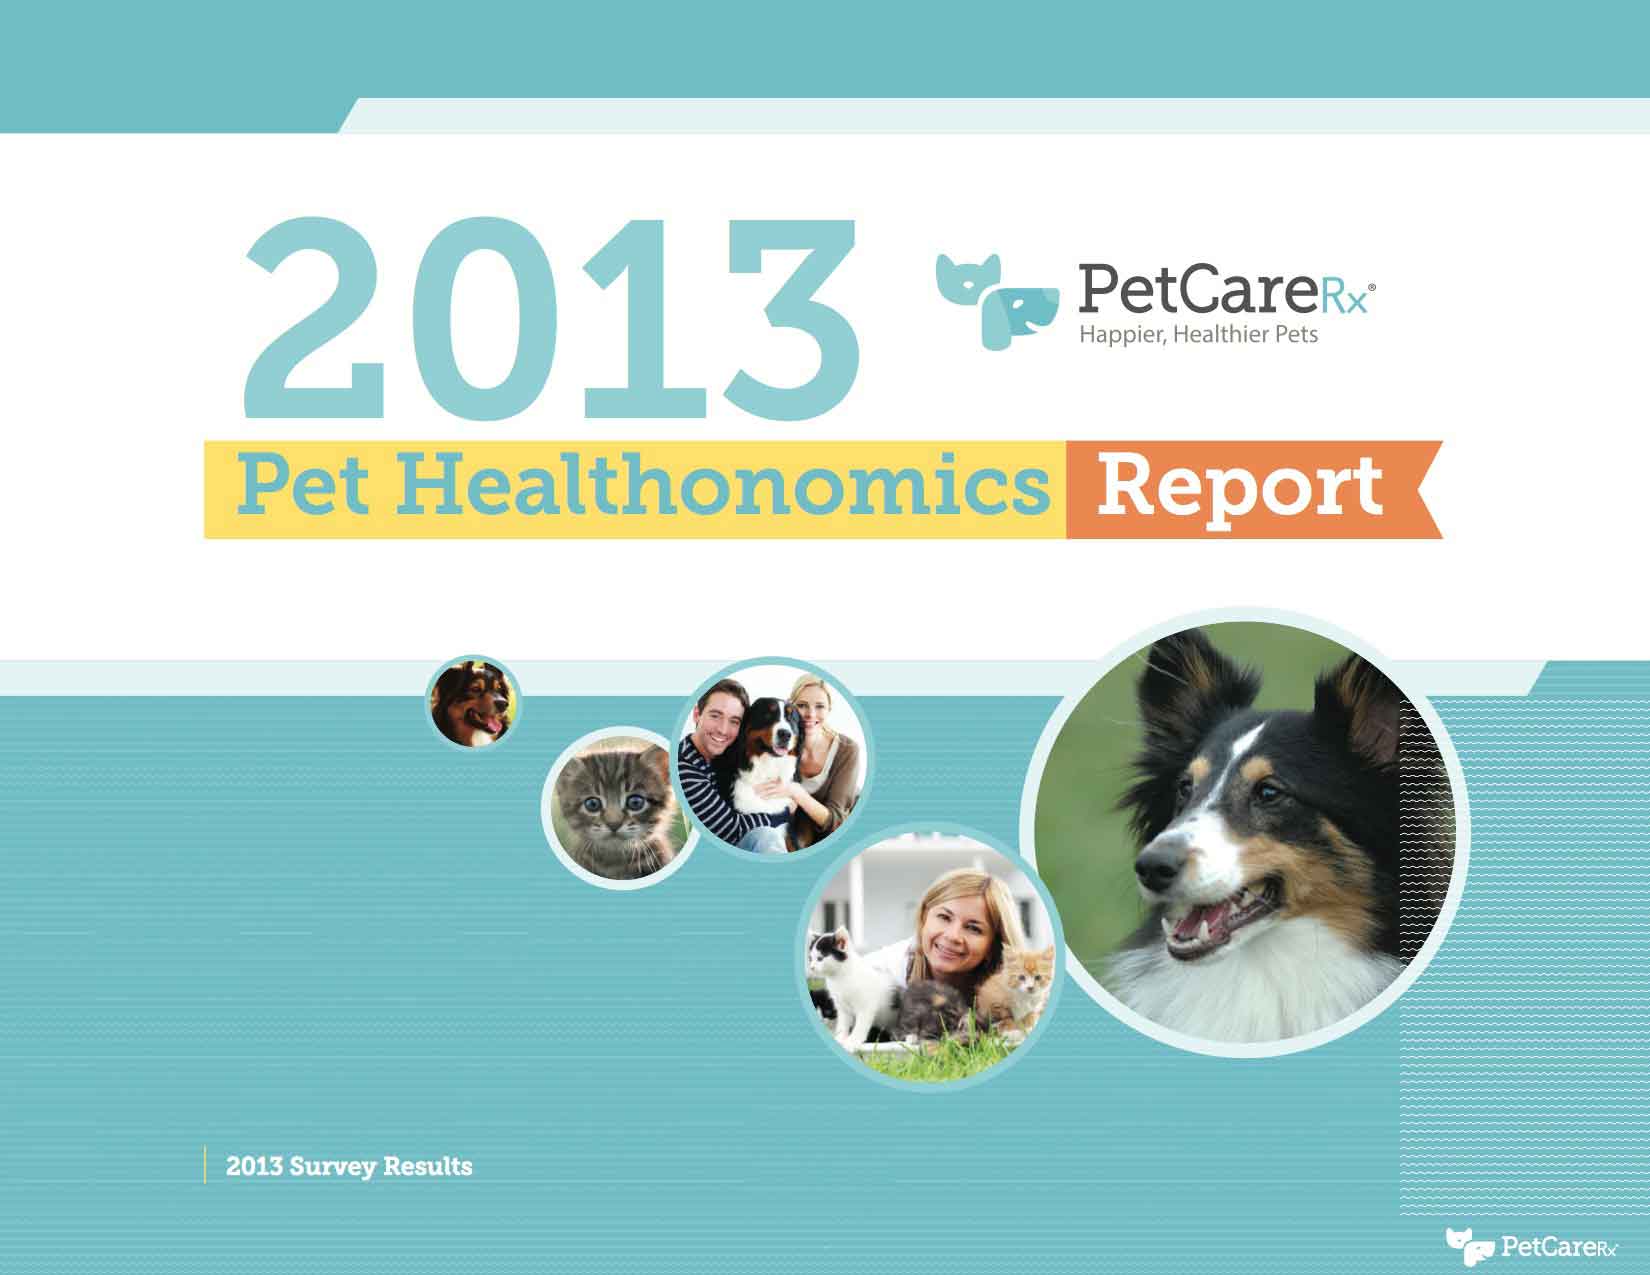 PetCareRx-2013-Healthonomics-Report